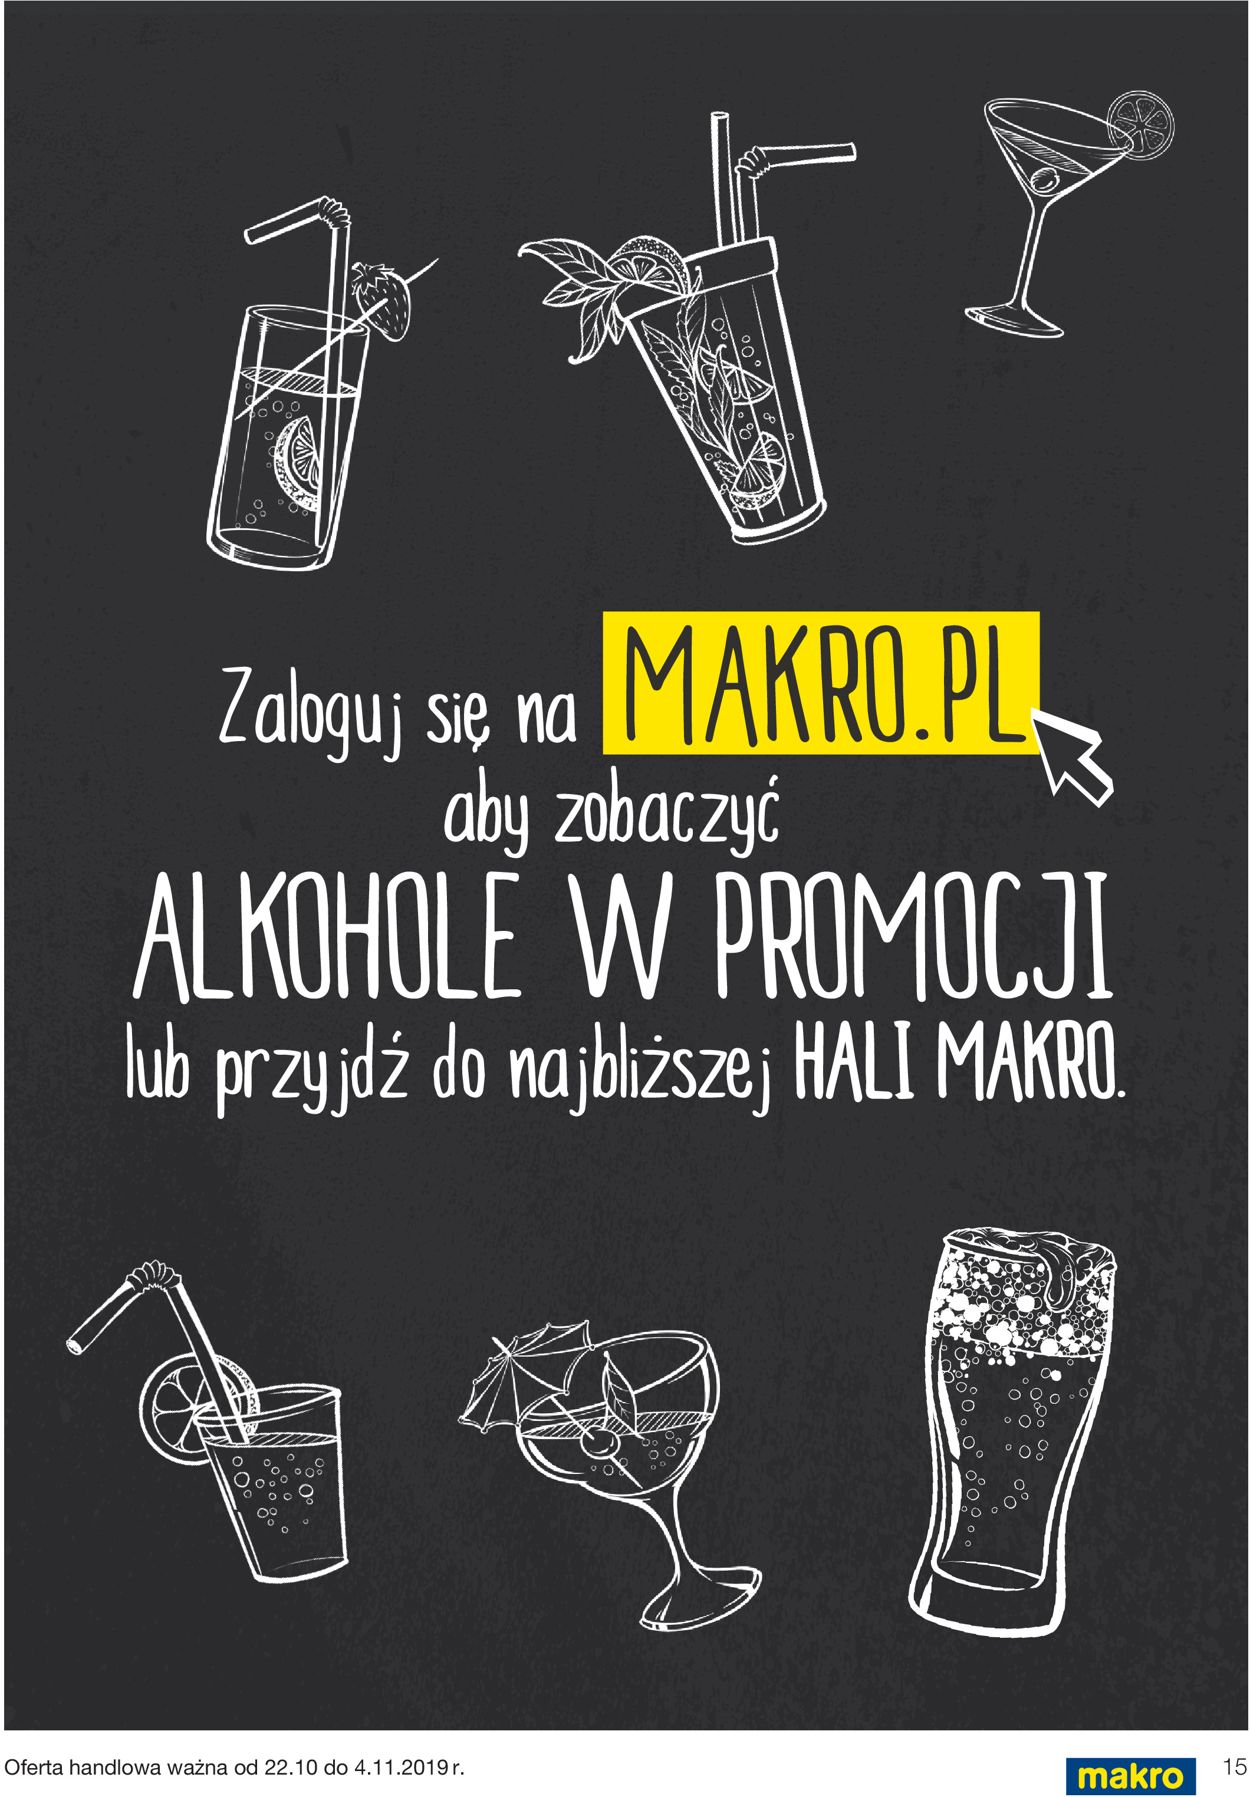 Gazetka promocyjna Makro - 22.10-04.11.2019 (Strona 15)